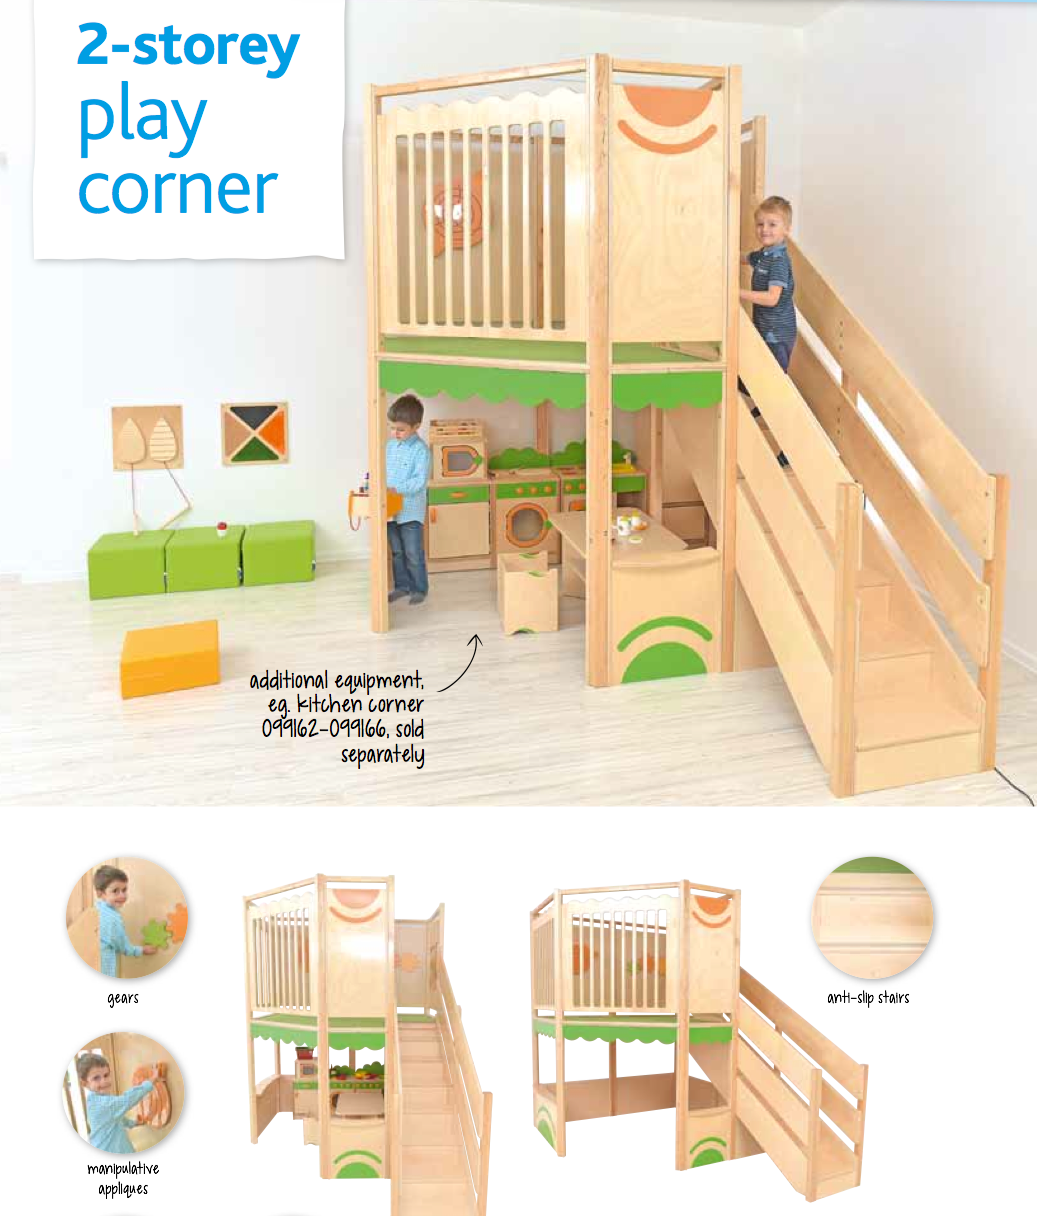 2-Storey Play Corner